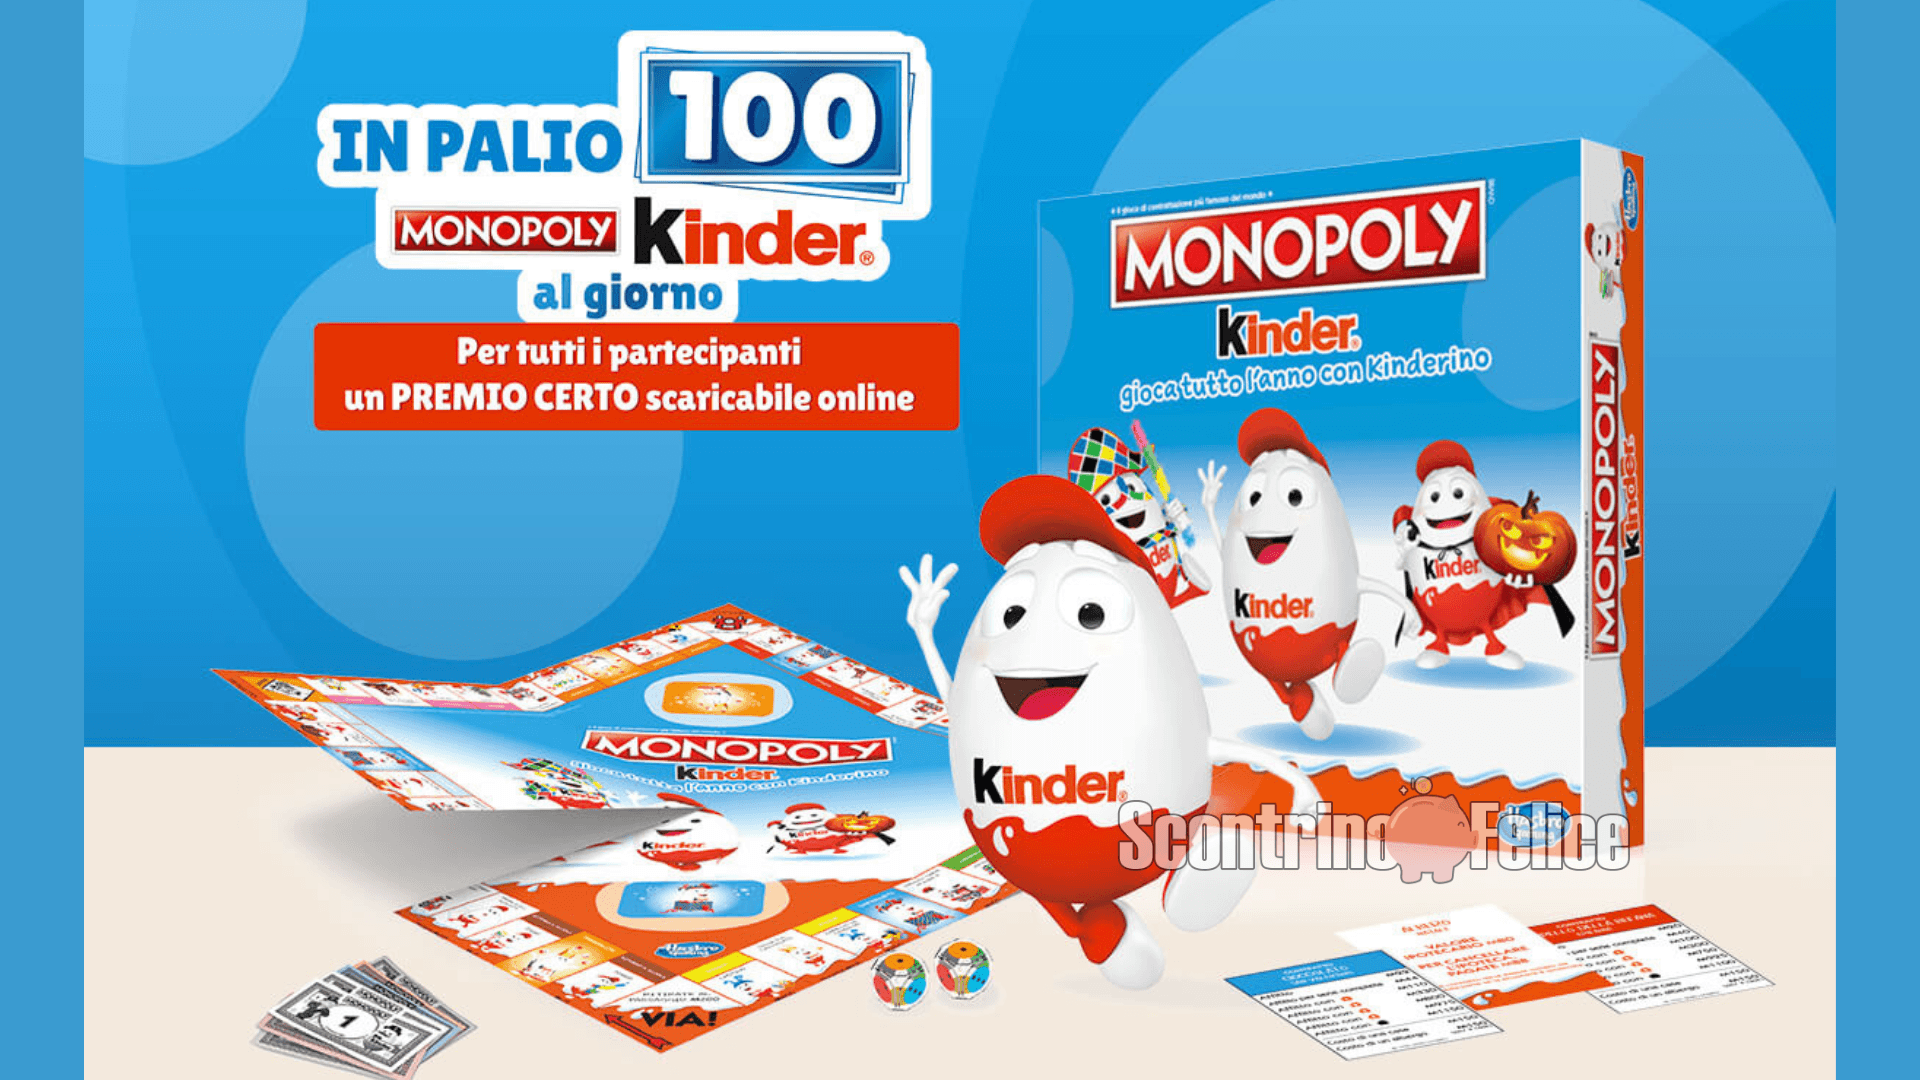 Concorso Kinder: in palio 100 Monopoly ogni giorno! 66